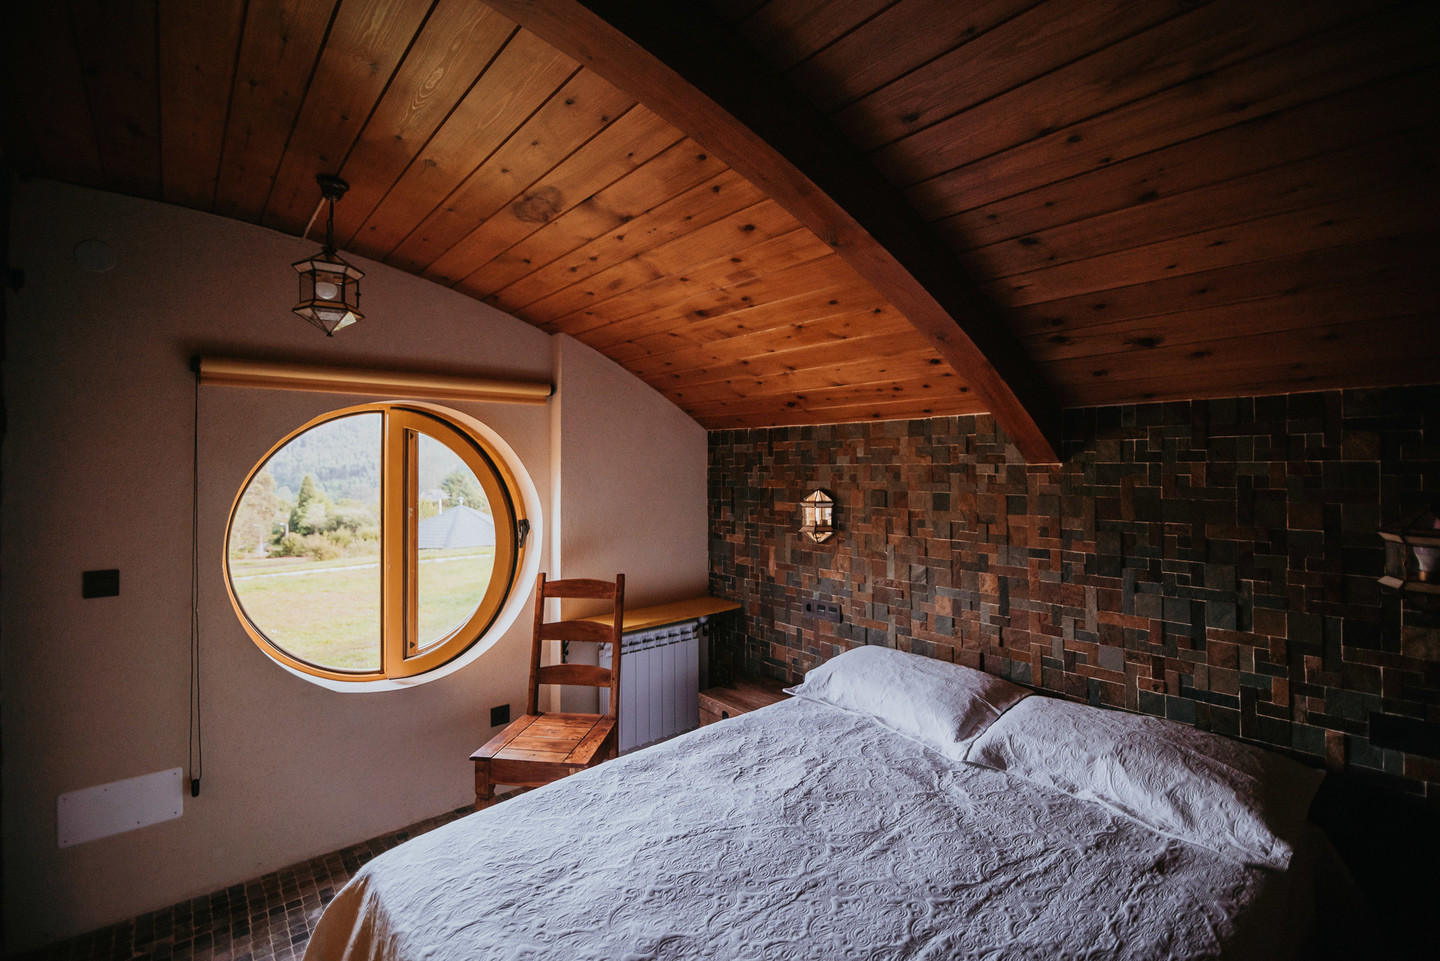 Dormir en una casa de Hobbit en Galicia. Hotel 'Mi tesoro' inspirado en el Señor de los Anillos 2